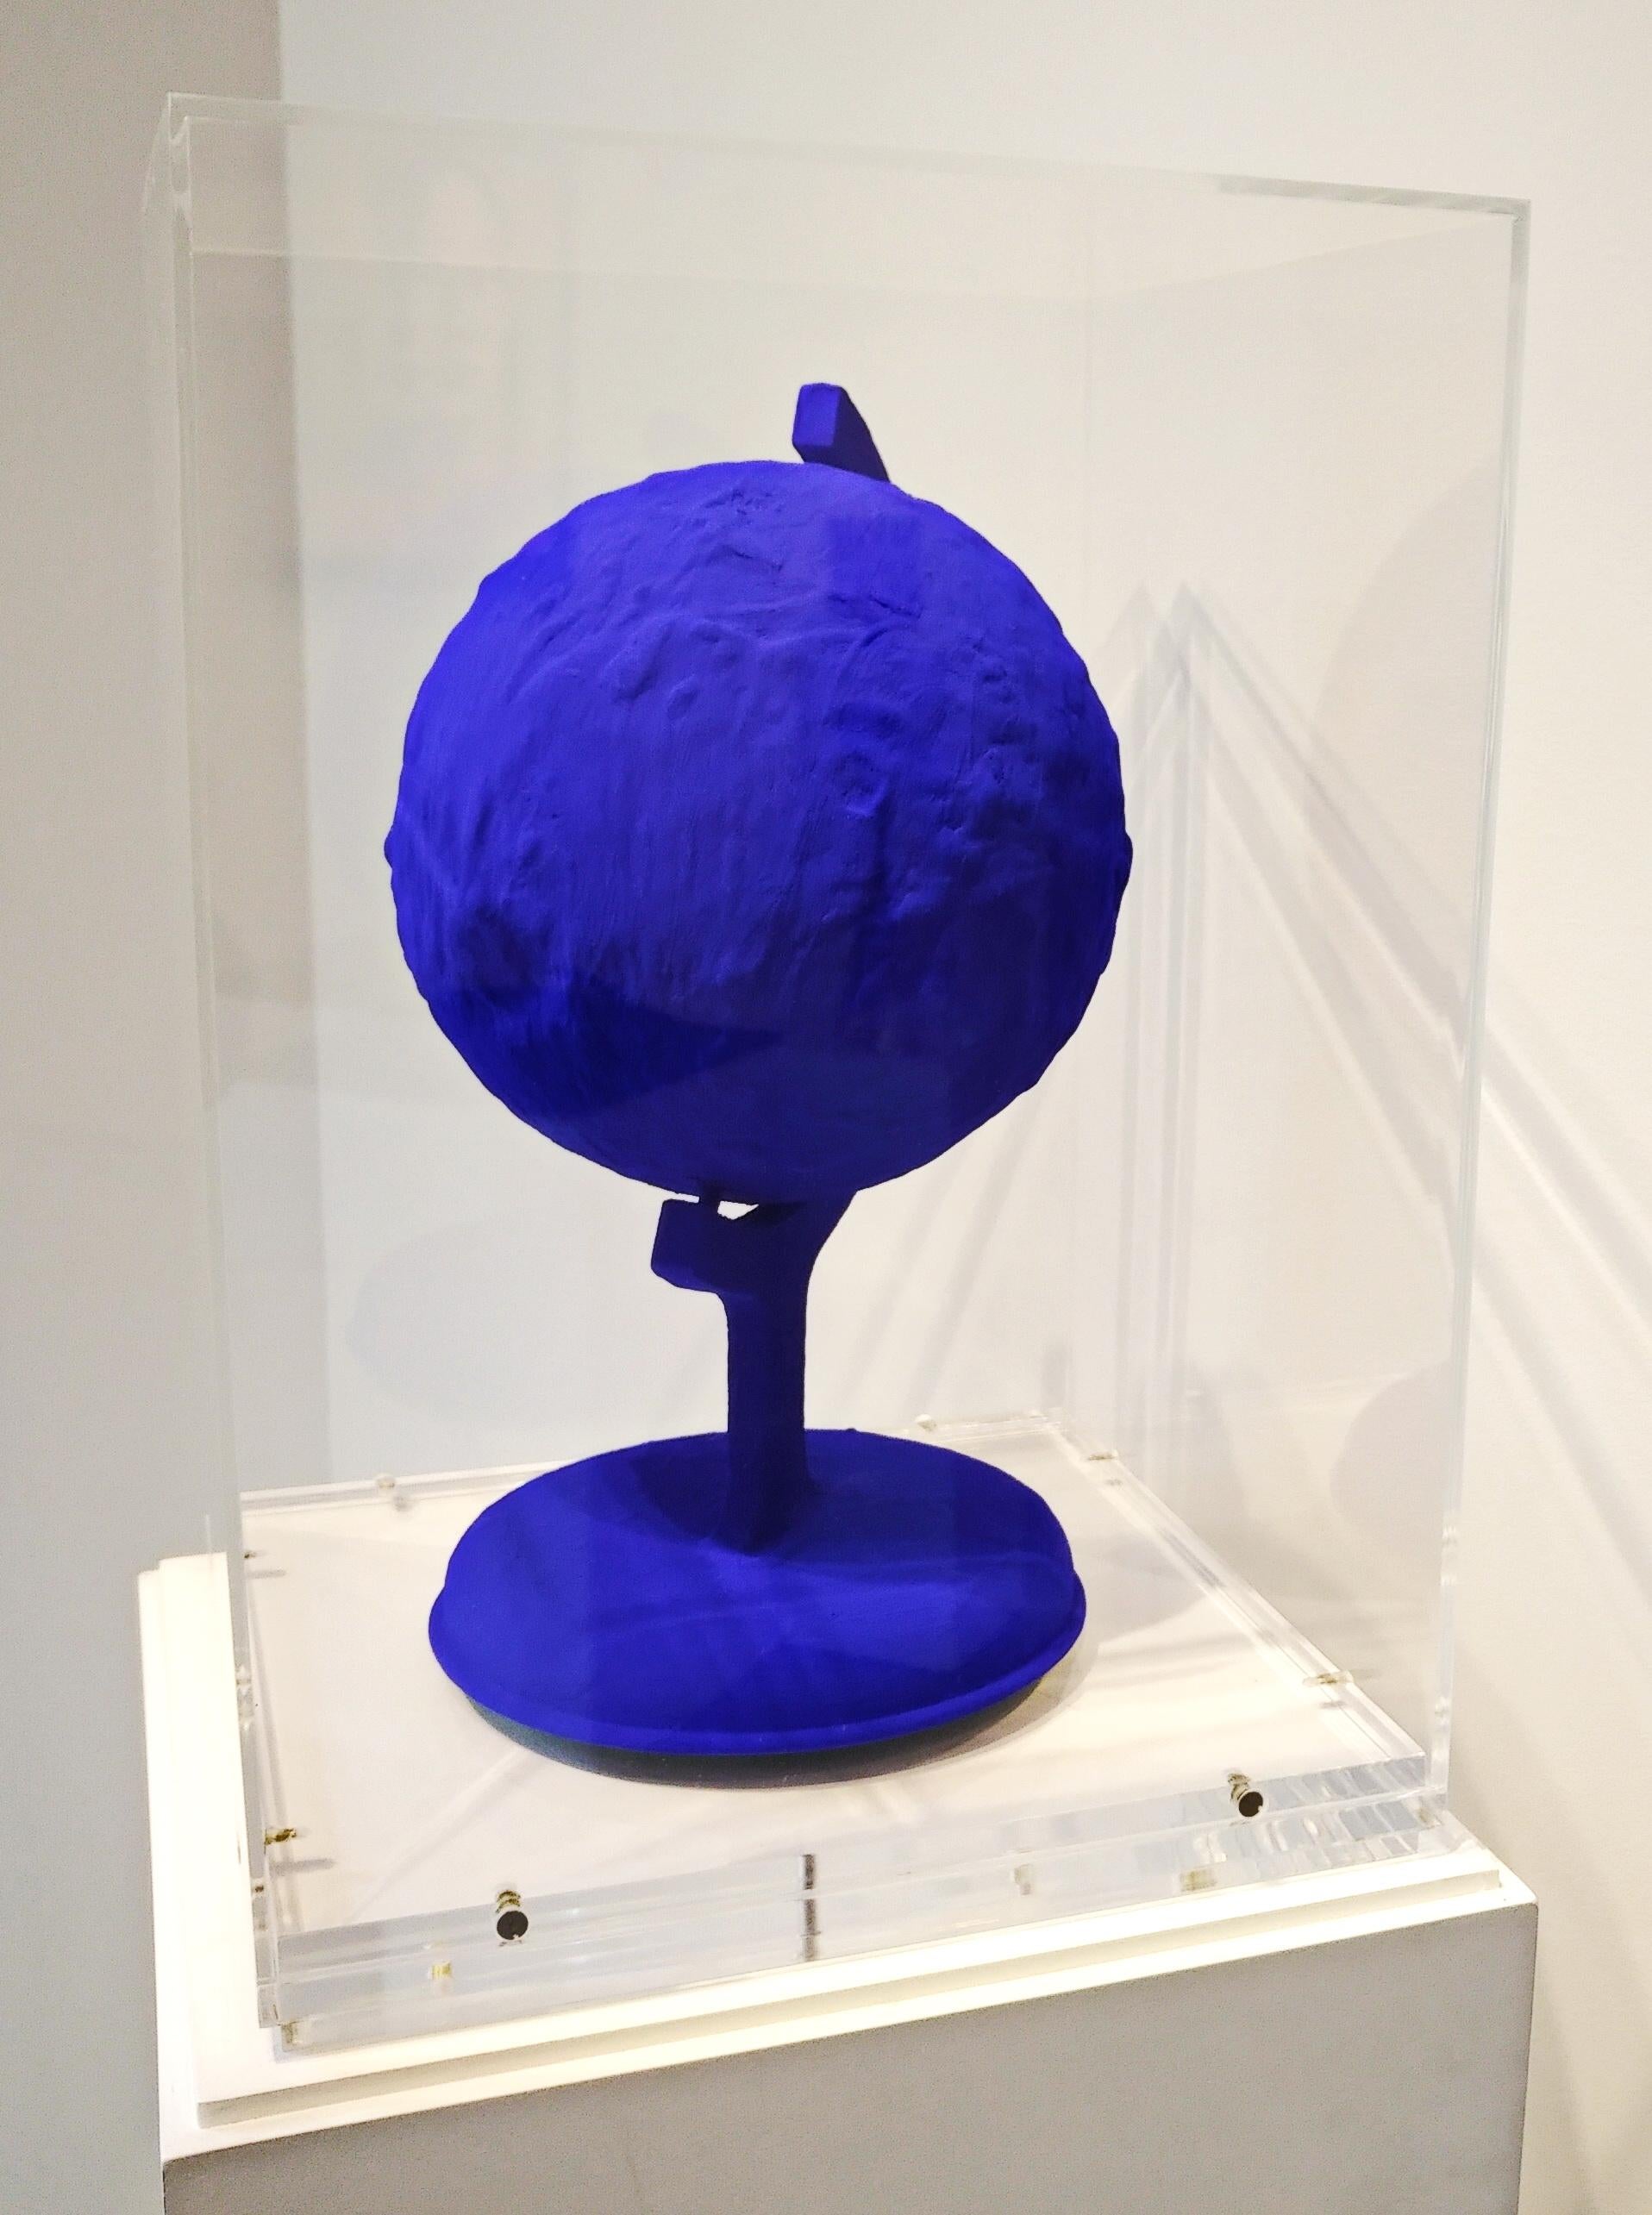 Yves Klein Blaue Erde Skulptur IKB Pigment Gips Abguss in Plexiglas Box 1